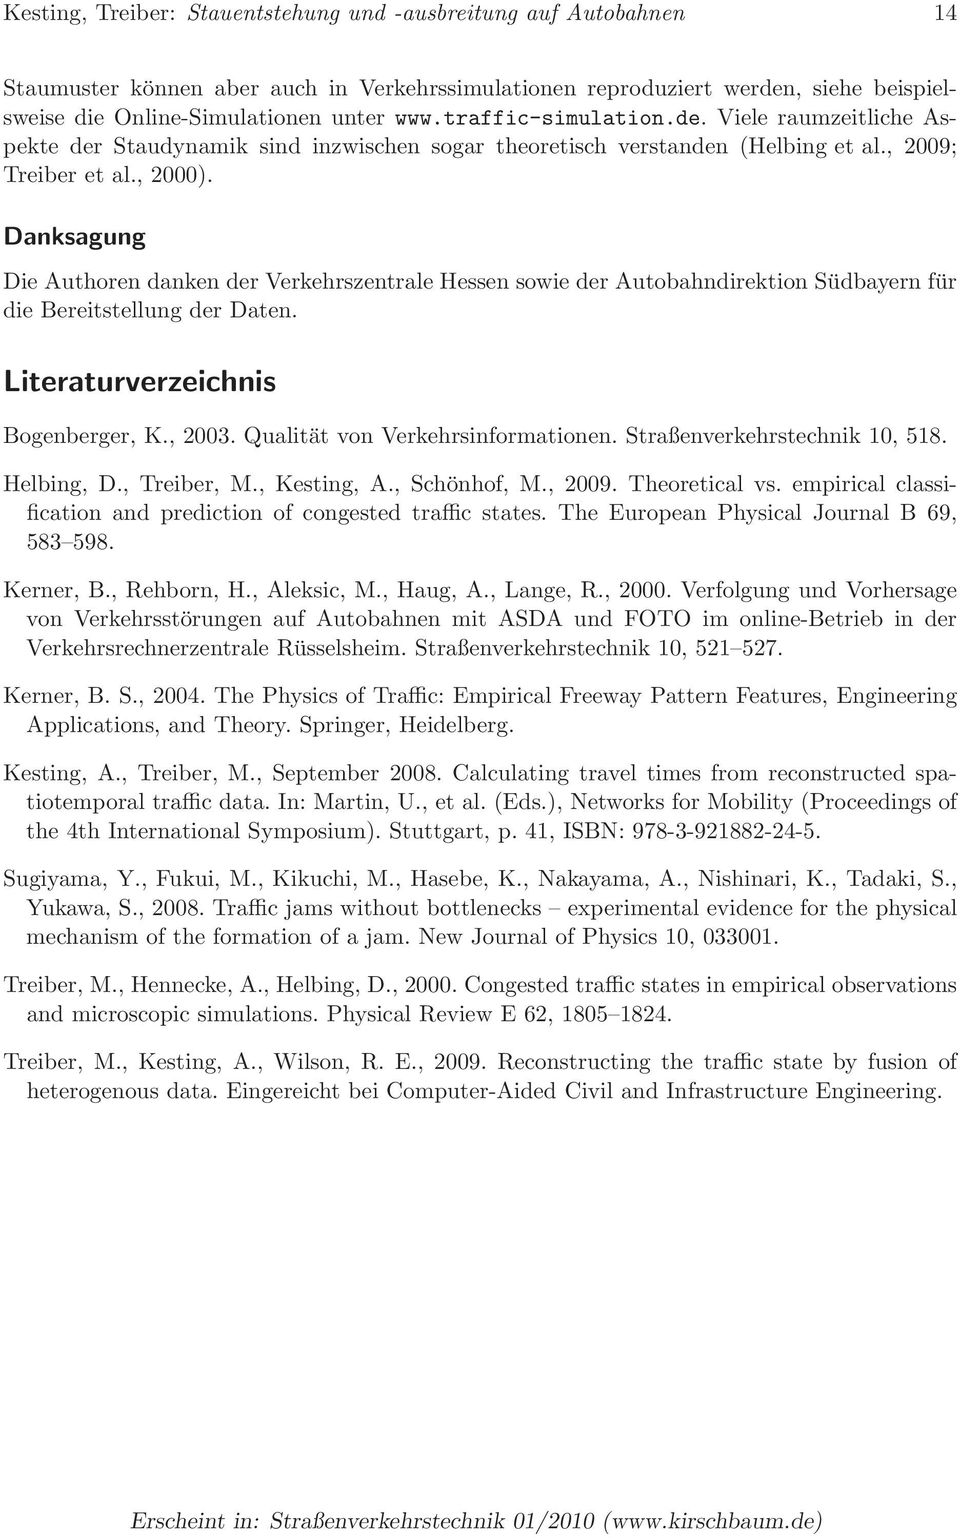 Danksagung Die Authoren danken der Verkehrszentrale Hessen sowie der Autobahndirektion Südbayern für die Bereitstellung der Daten. Literaturverzeichnis Bogenberger, K., 2003.